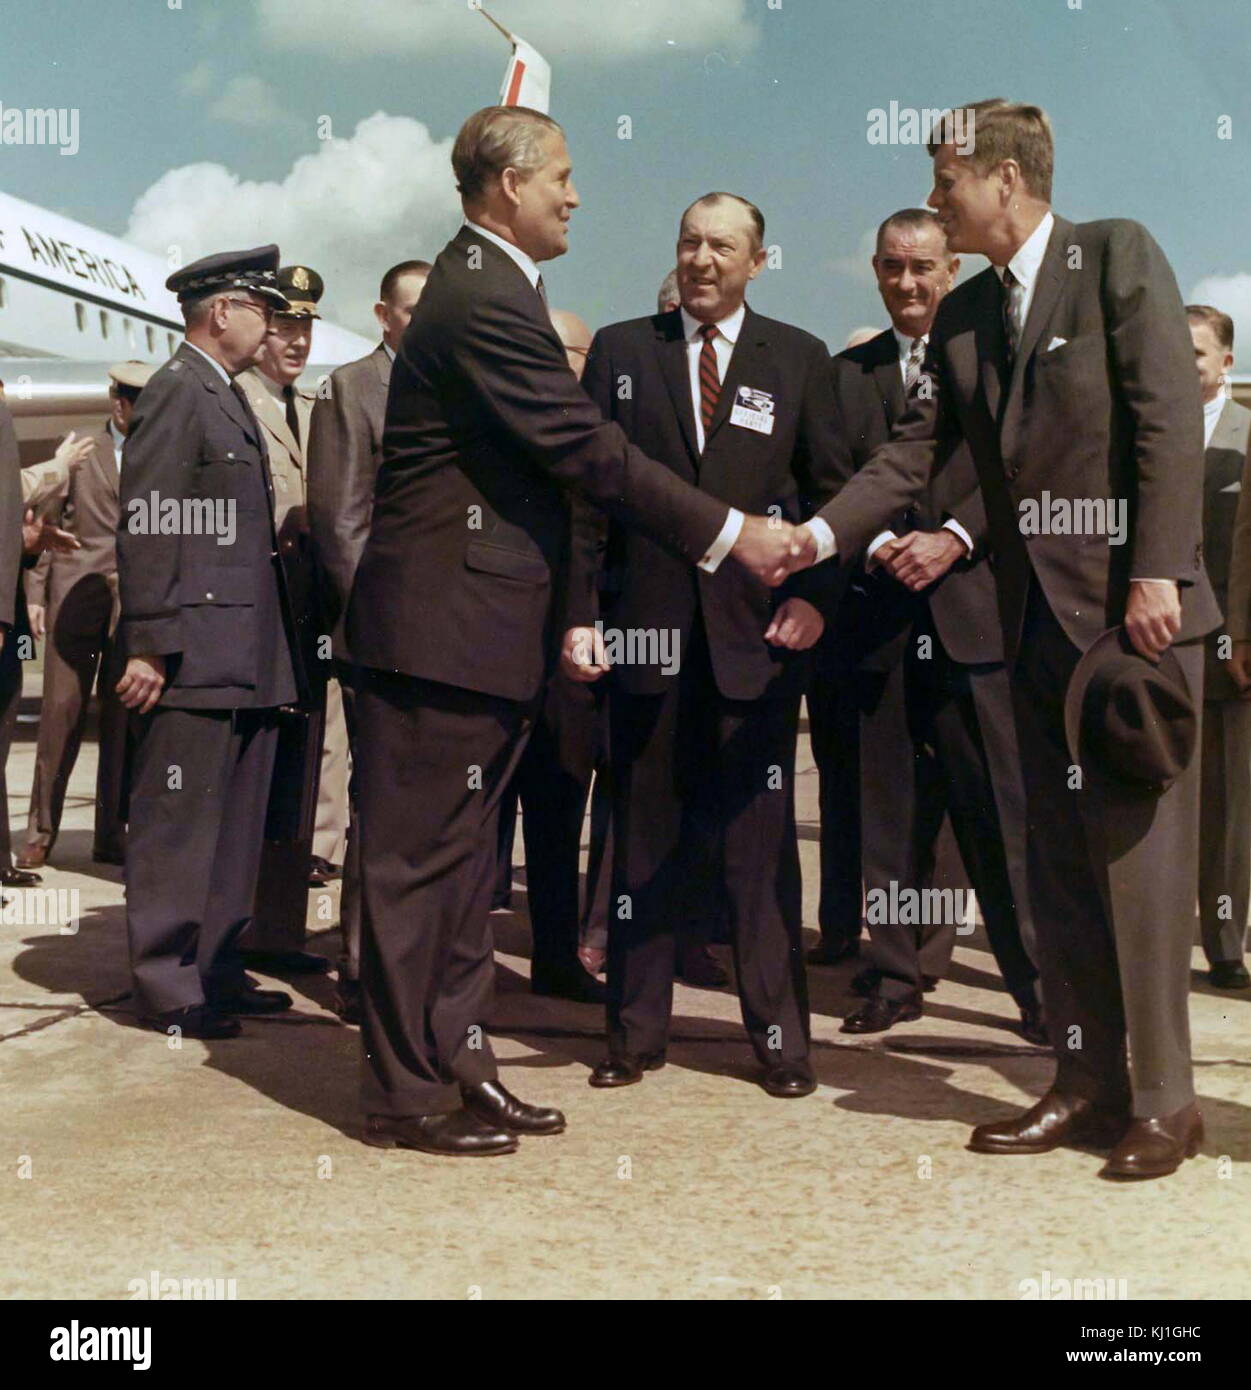 El Presidente John F. Kennedy y Lyndon B. Johnson Vice Presidente visita el Dr. Wernher von Braun. Wernher von Braun, ingeniero aeroespacial y arquitecto espacial, uno de los "padres de la ciencia de los cohetes". Wernher von Braun con nosotros el Presidente John F. Kennedy (FRONT R) junto a la Air Force One en el MSFC Redstone Arsenal del aeródromo en Huntsville; en la espalda, entre ellos, el Vicepresidente de Estados Unidos, Lyndon B. Johnson. 1962 Foto de stock